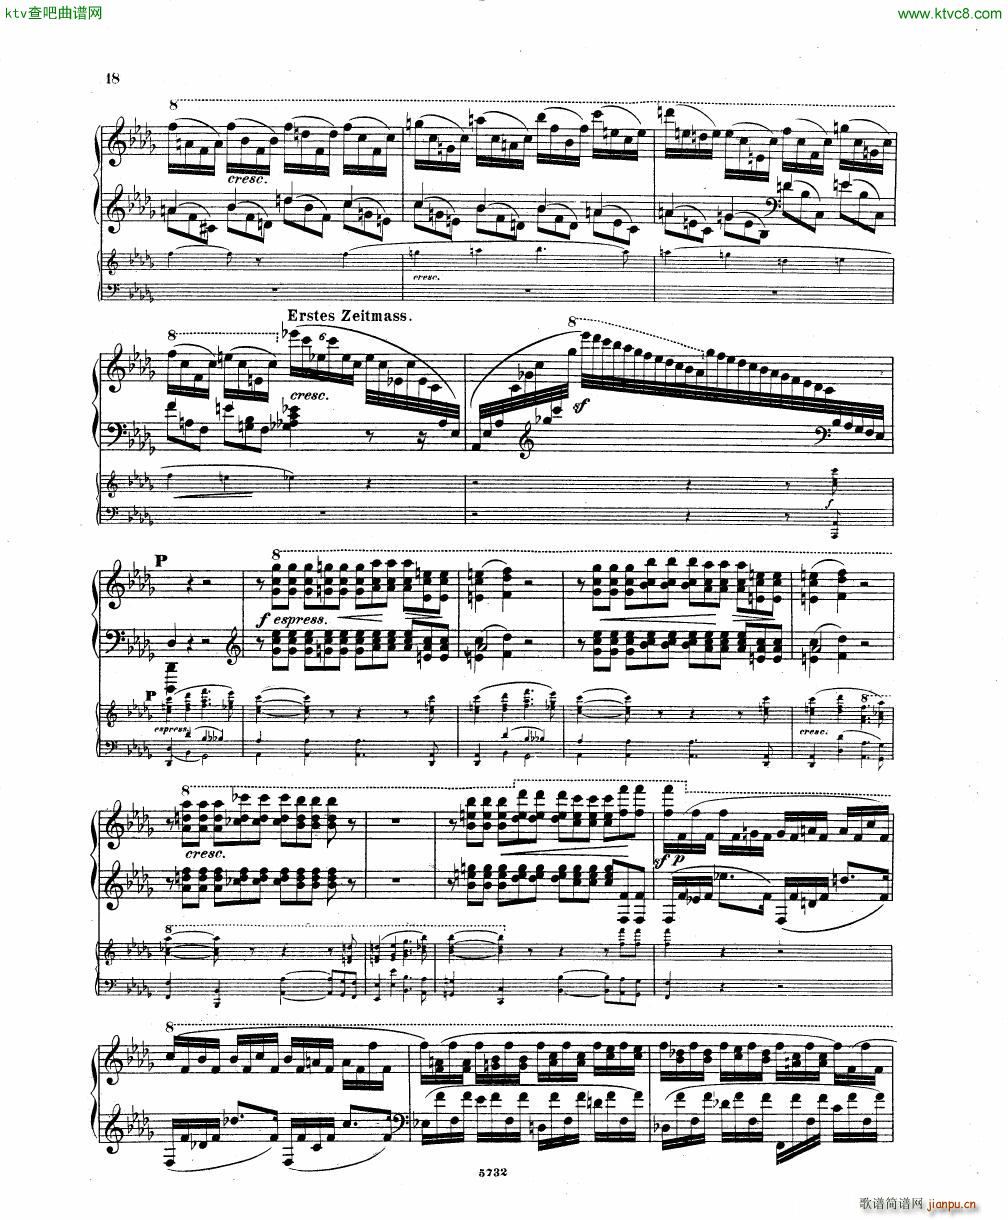 Fuchs Piano concerto Op 27 I()16